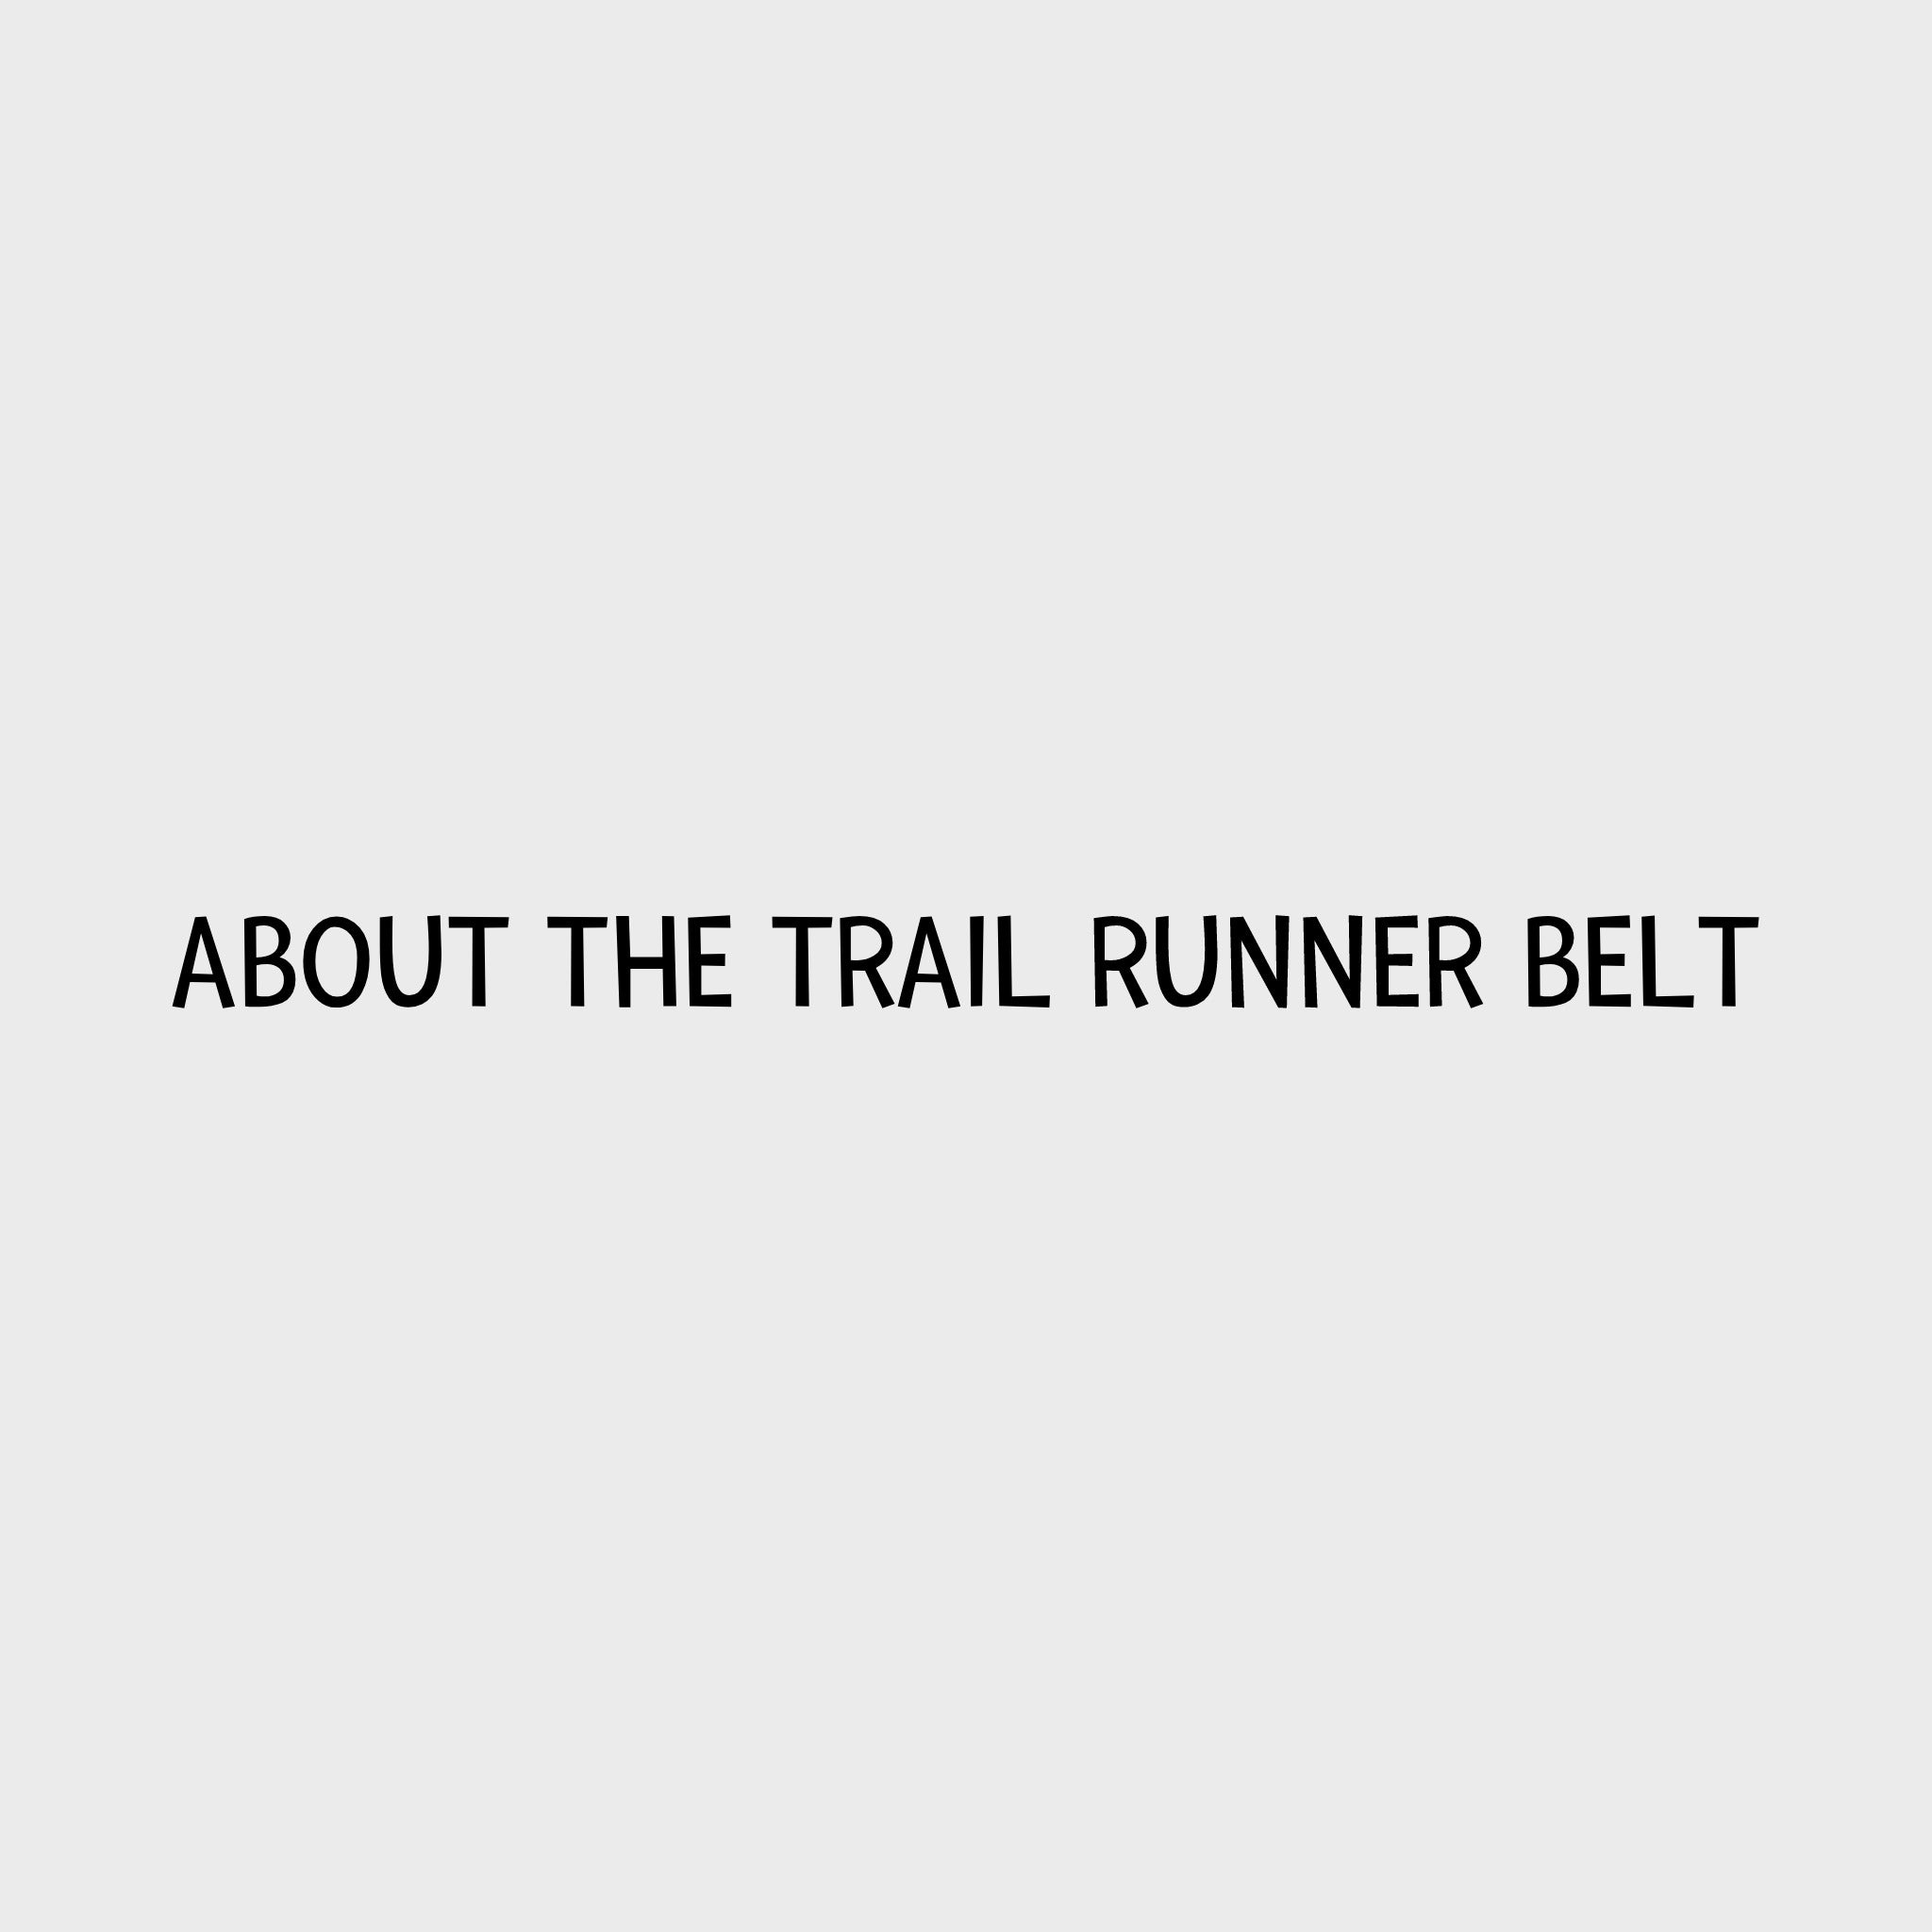 Video - Ruffwear Trail Runner Belt